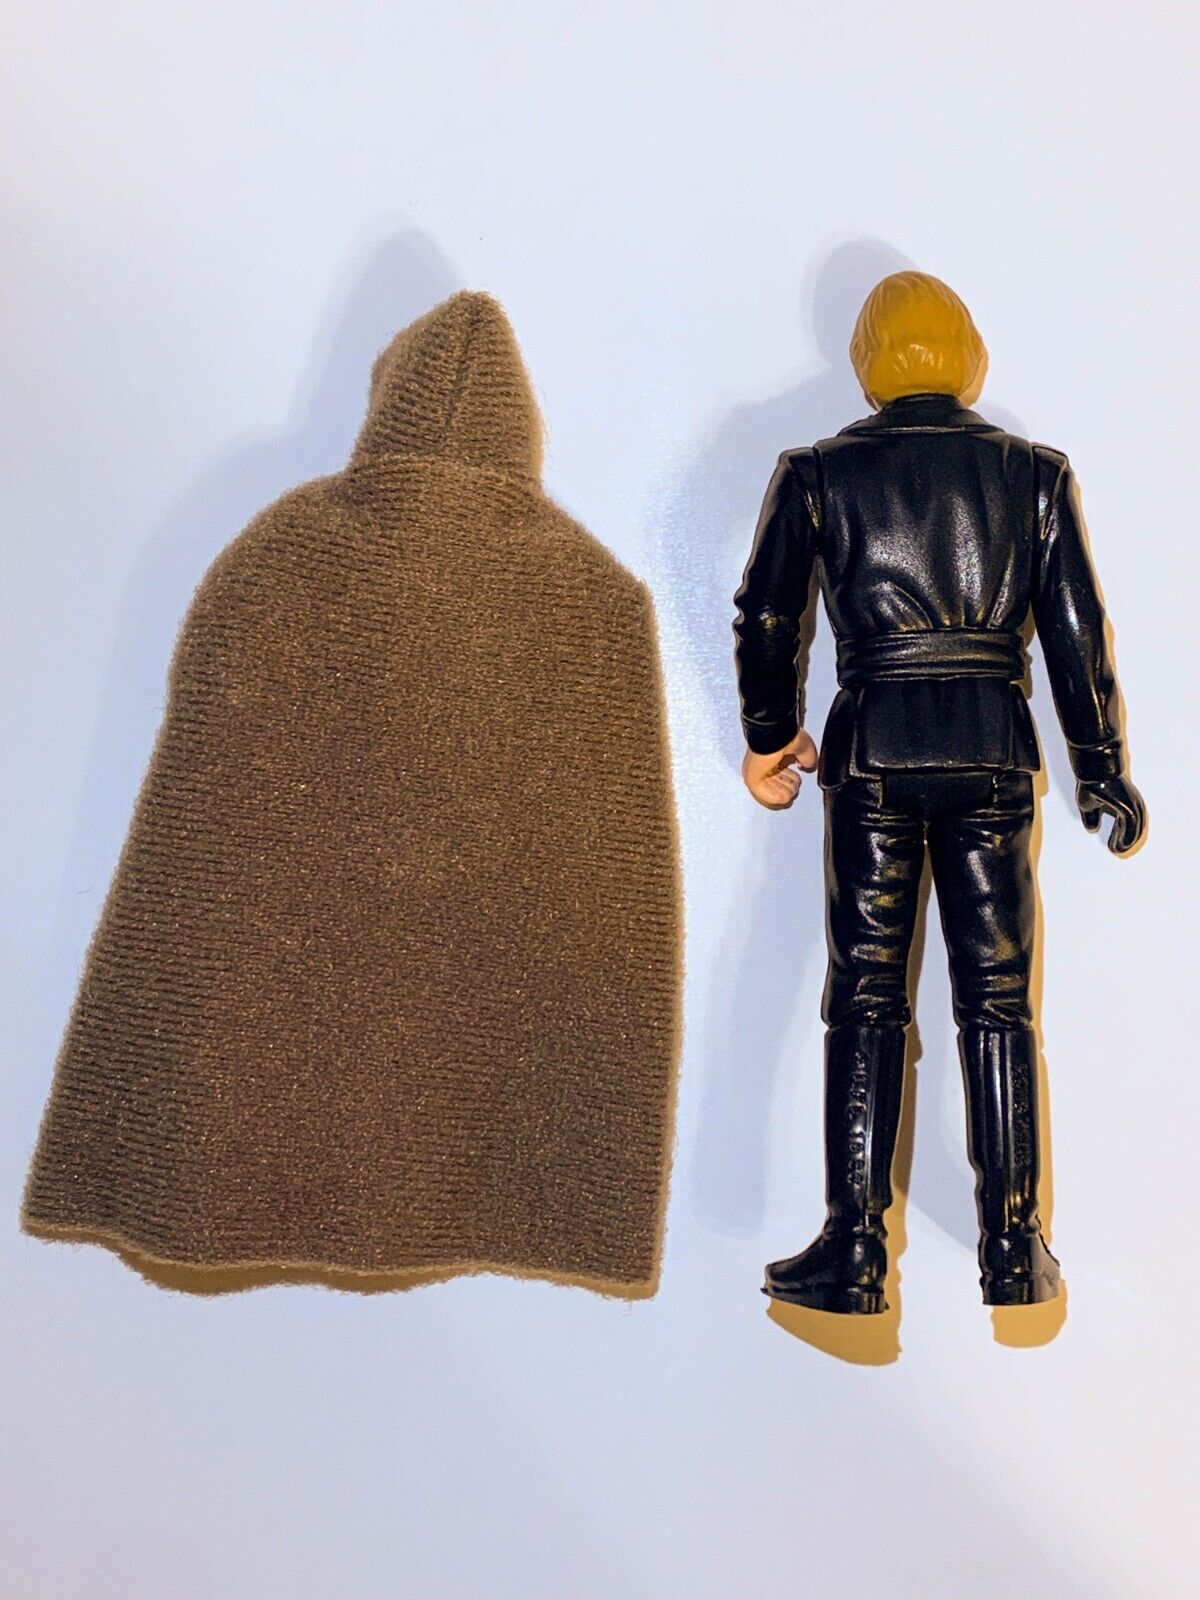 Luke Skywalker (Jedi Knight Outfit) sold